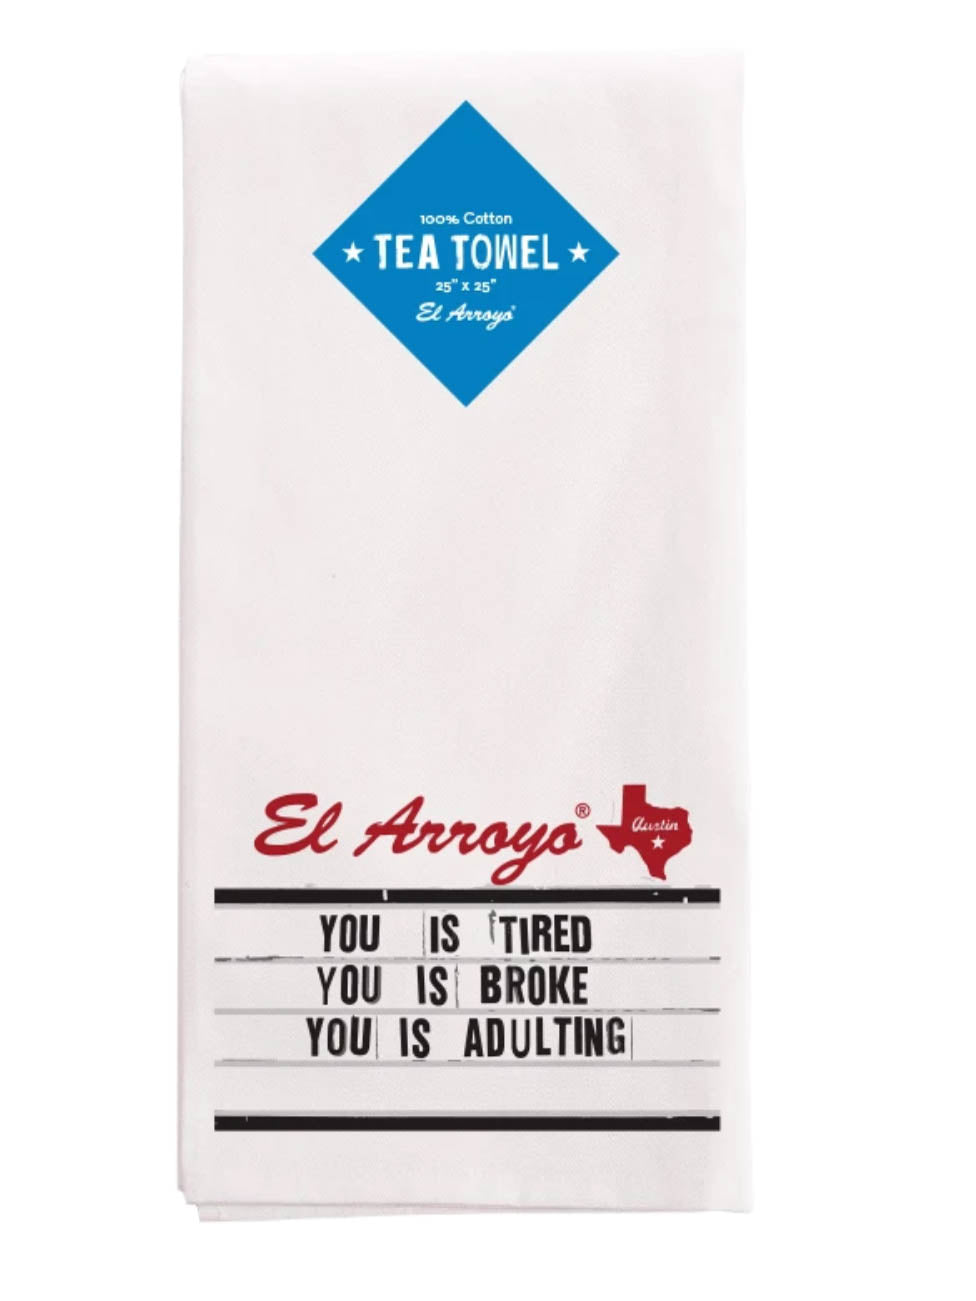 Tea Towels from El Arroyo